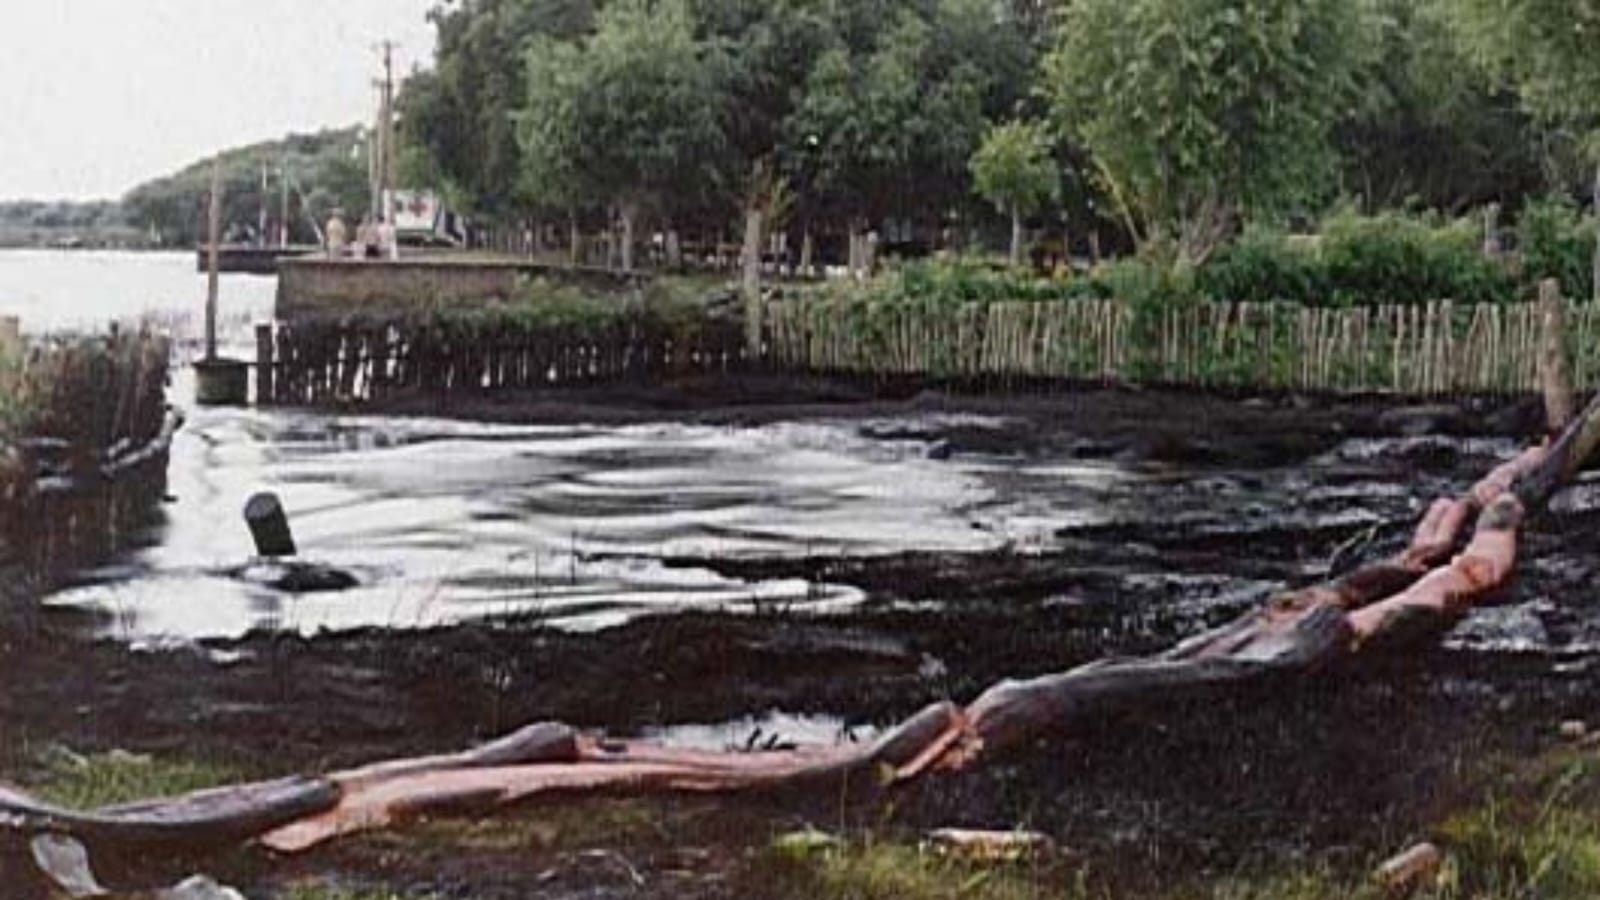   Pedido de informe aprobado: Shell y el derrame de petróleo en Magdalena, 25 años después